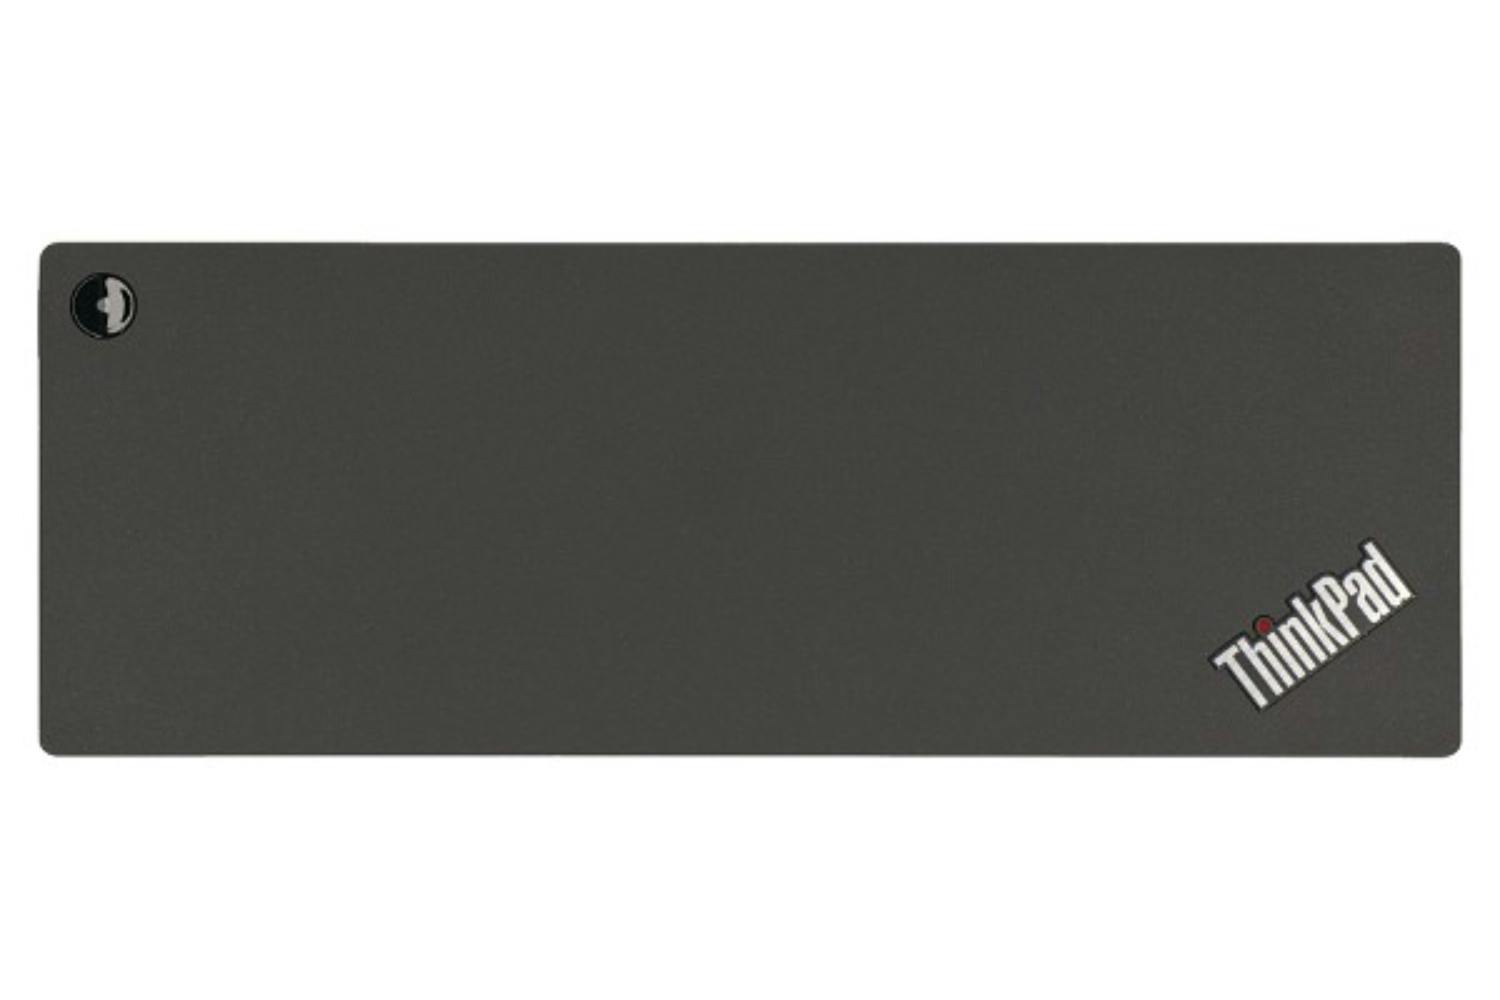 Lenovo 40AN0135IT 135W ThinkPad Thunderbolt 3 Dock